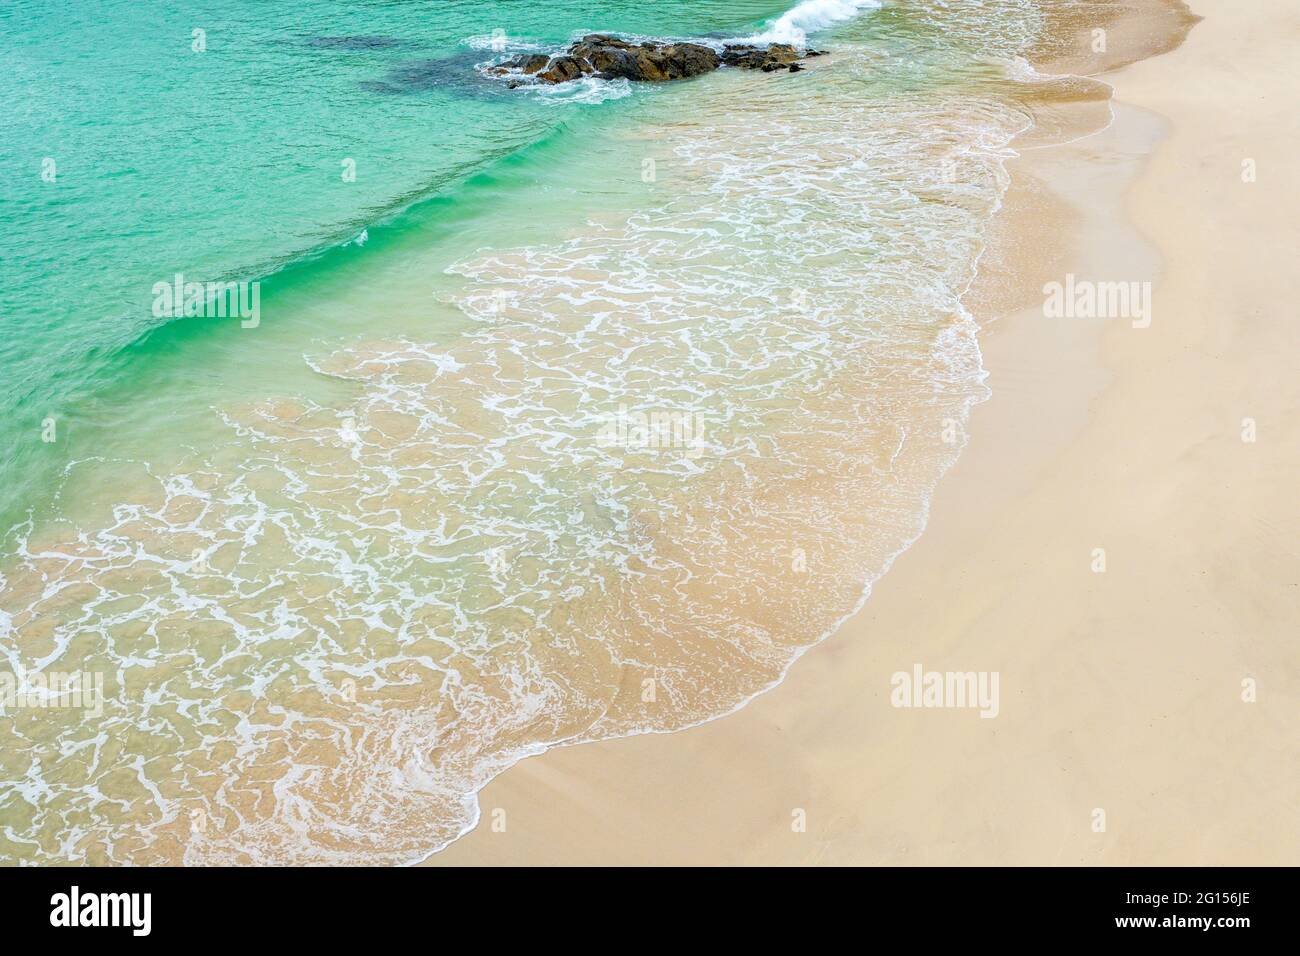 L'eau claire qui s'étend sur le sable blanc d'une plage écossaise Banque D'Images